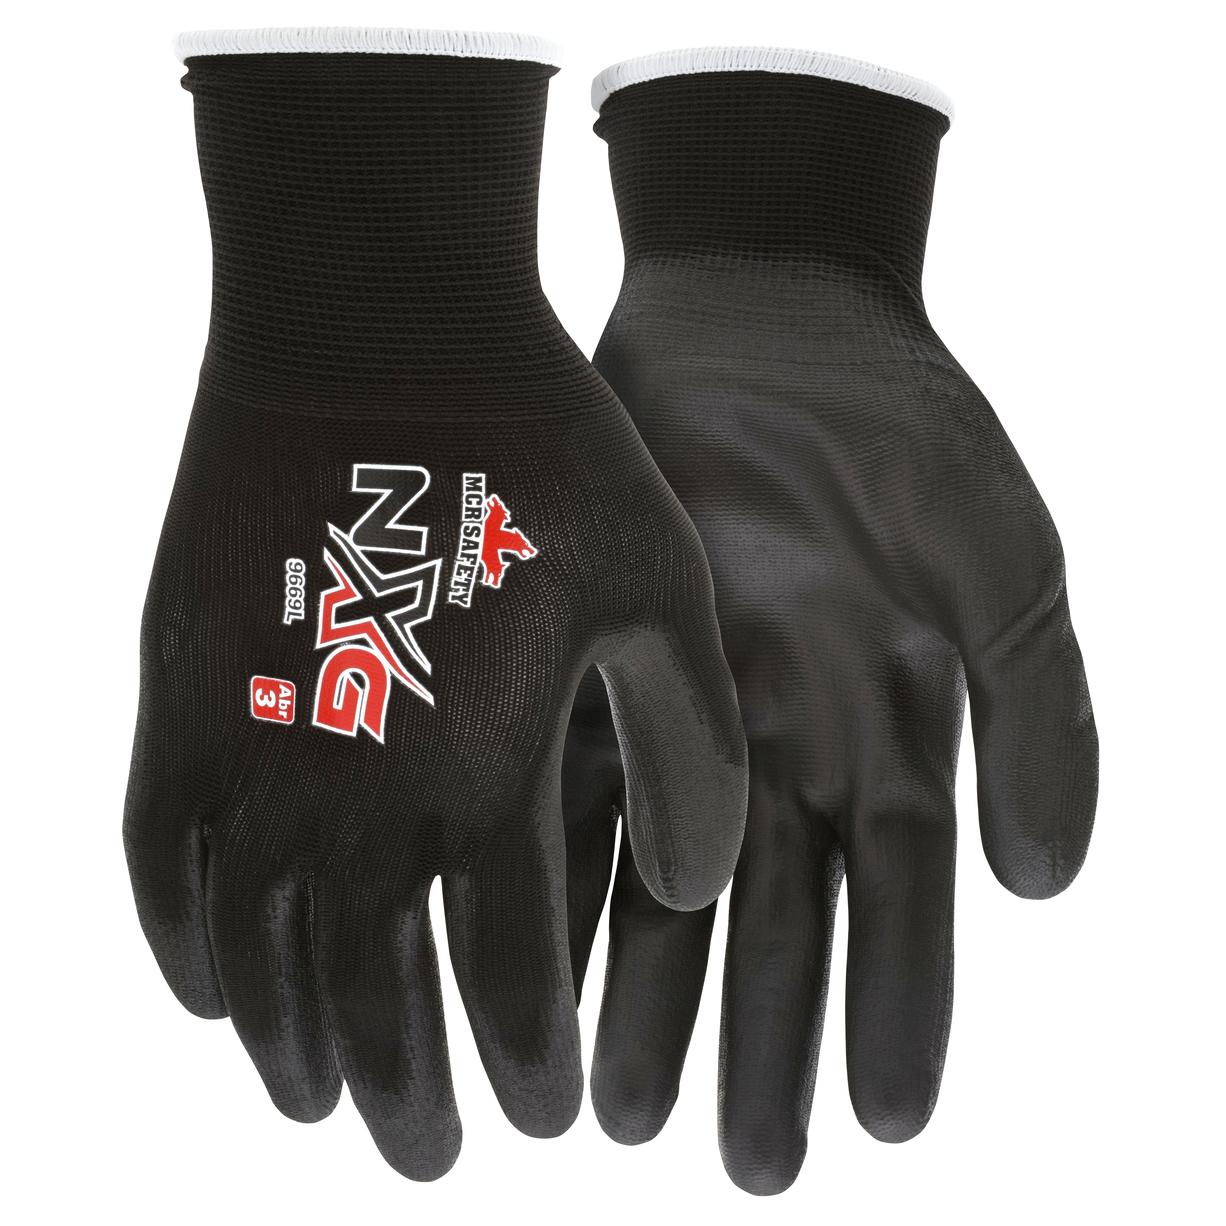 Safety Nylon Anti-static PU Work Gloves Coated Polyurethane Labor Protection